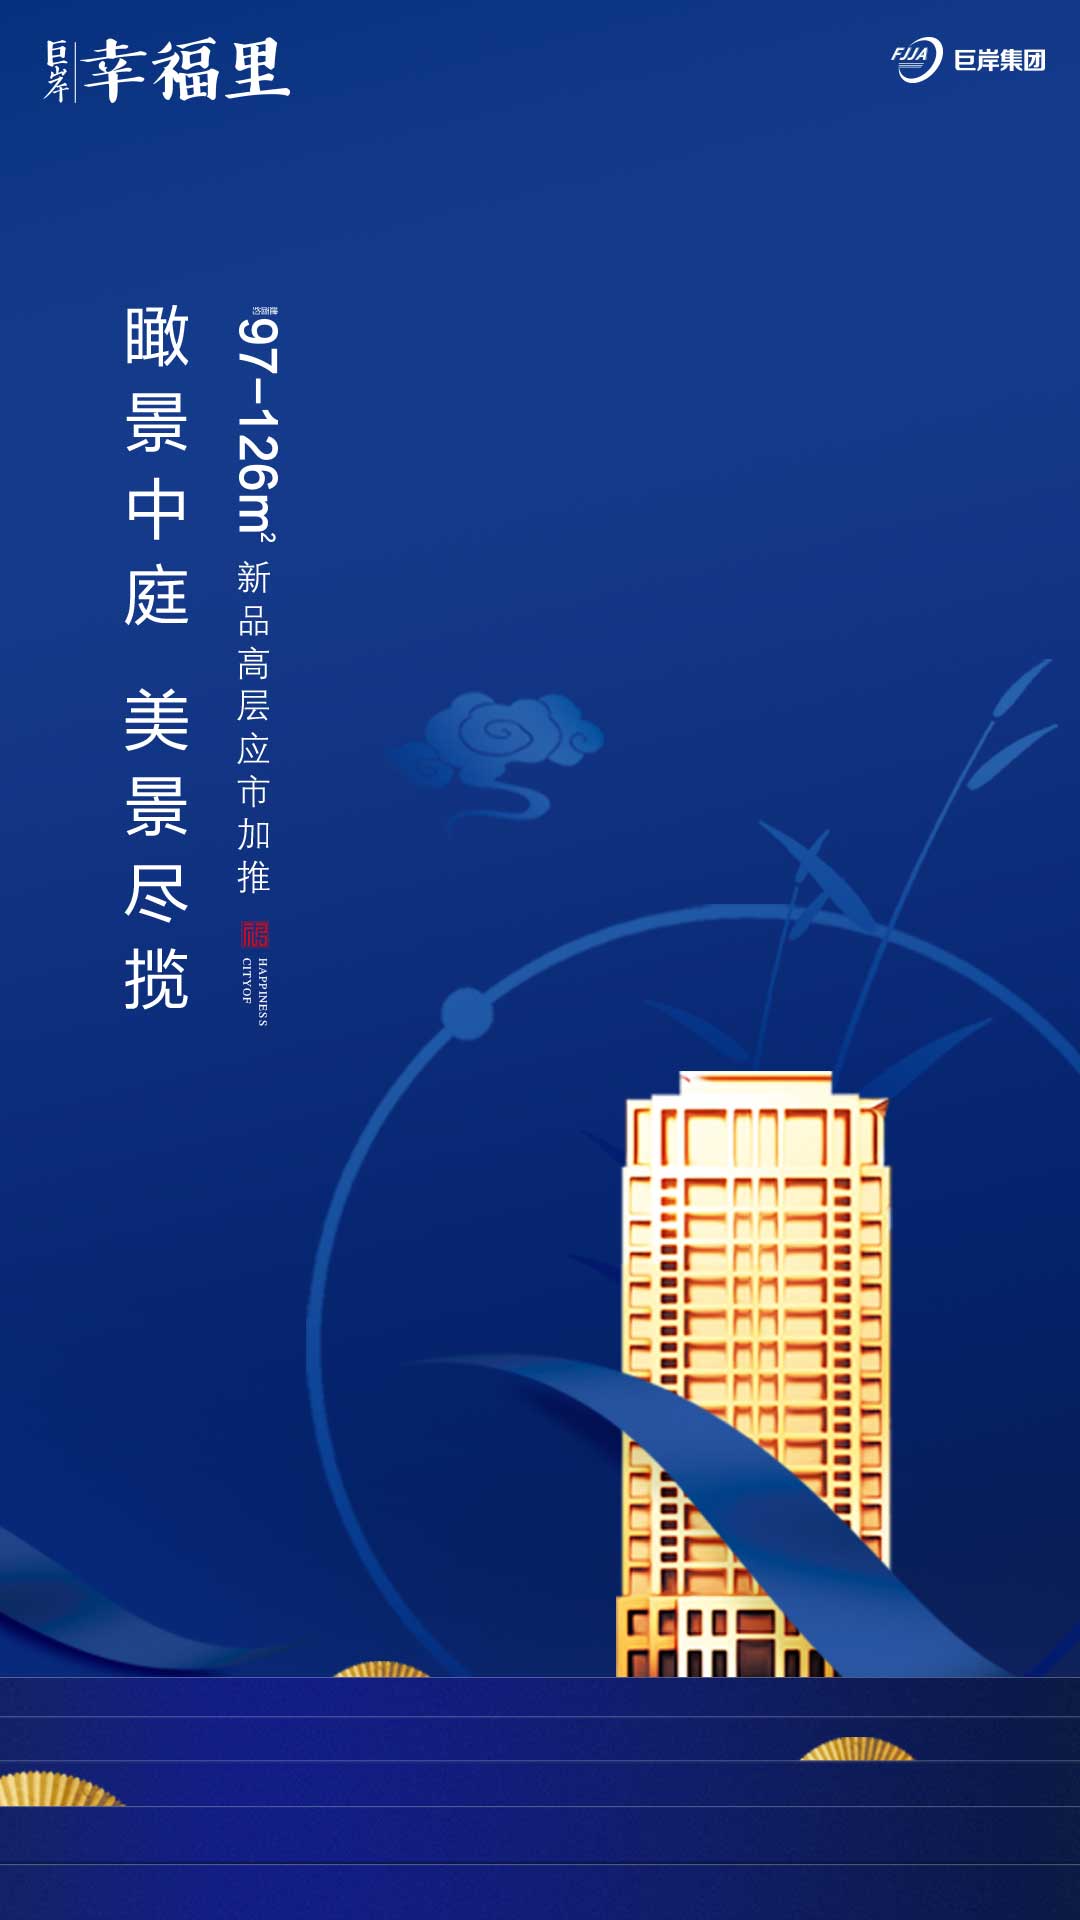 新中式高端房地产广告闪屏移动端海报蓝色色psd广告设计作品素材免费